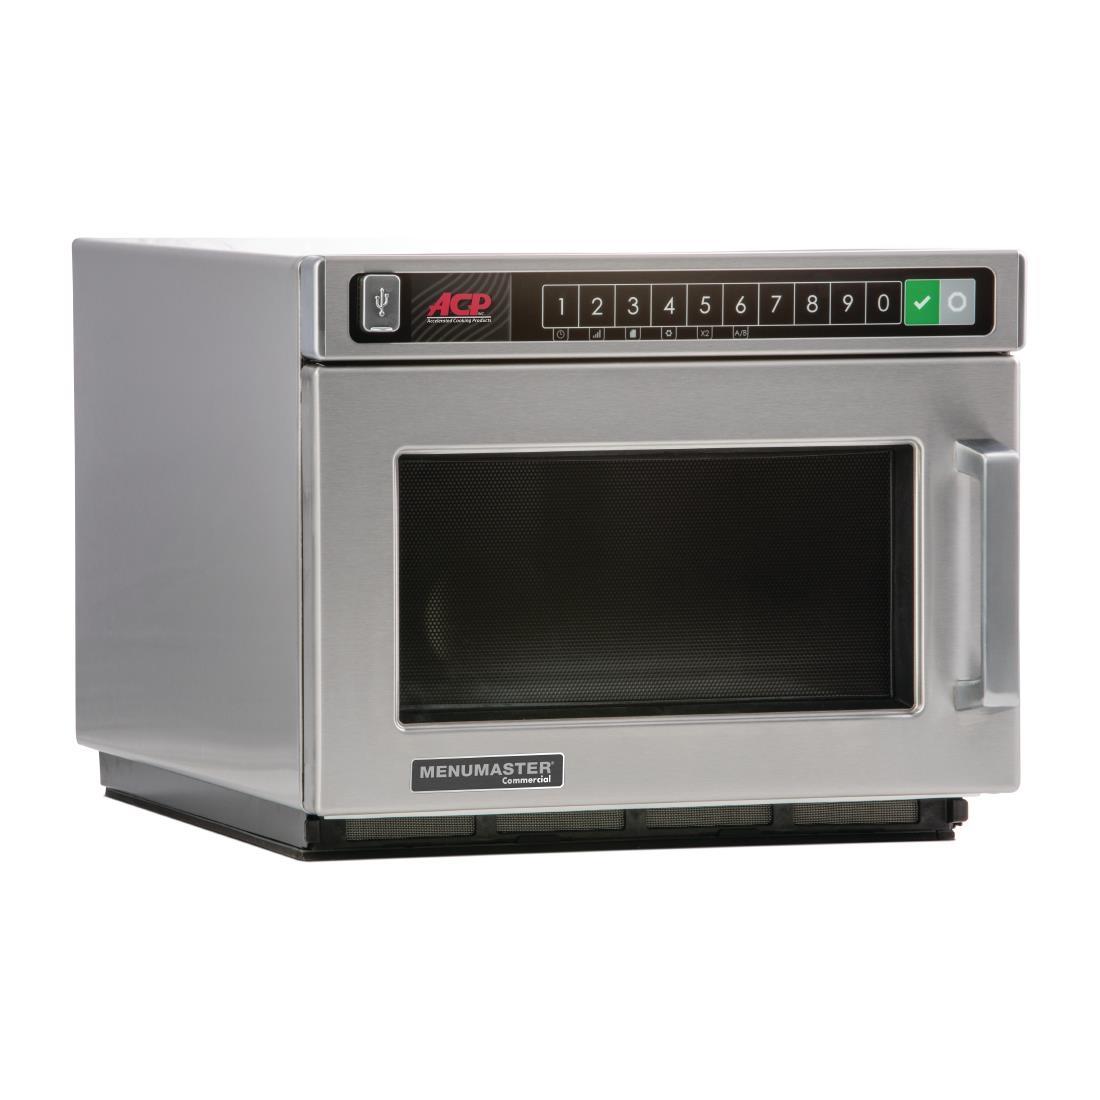 Menumaster Heavy Duty Programmable Microwave 17ltr 1400W DEC14E2 - CM736  - 1